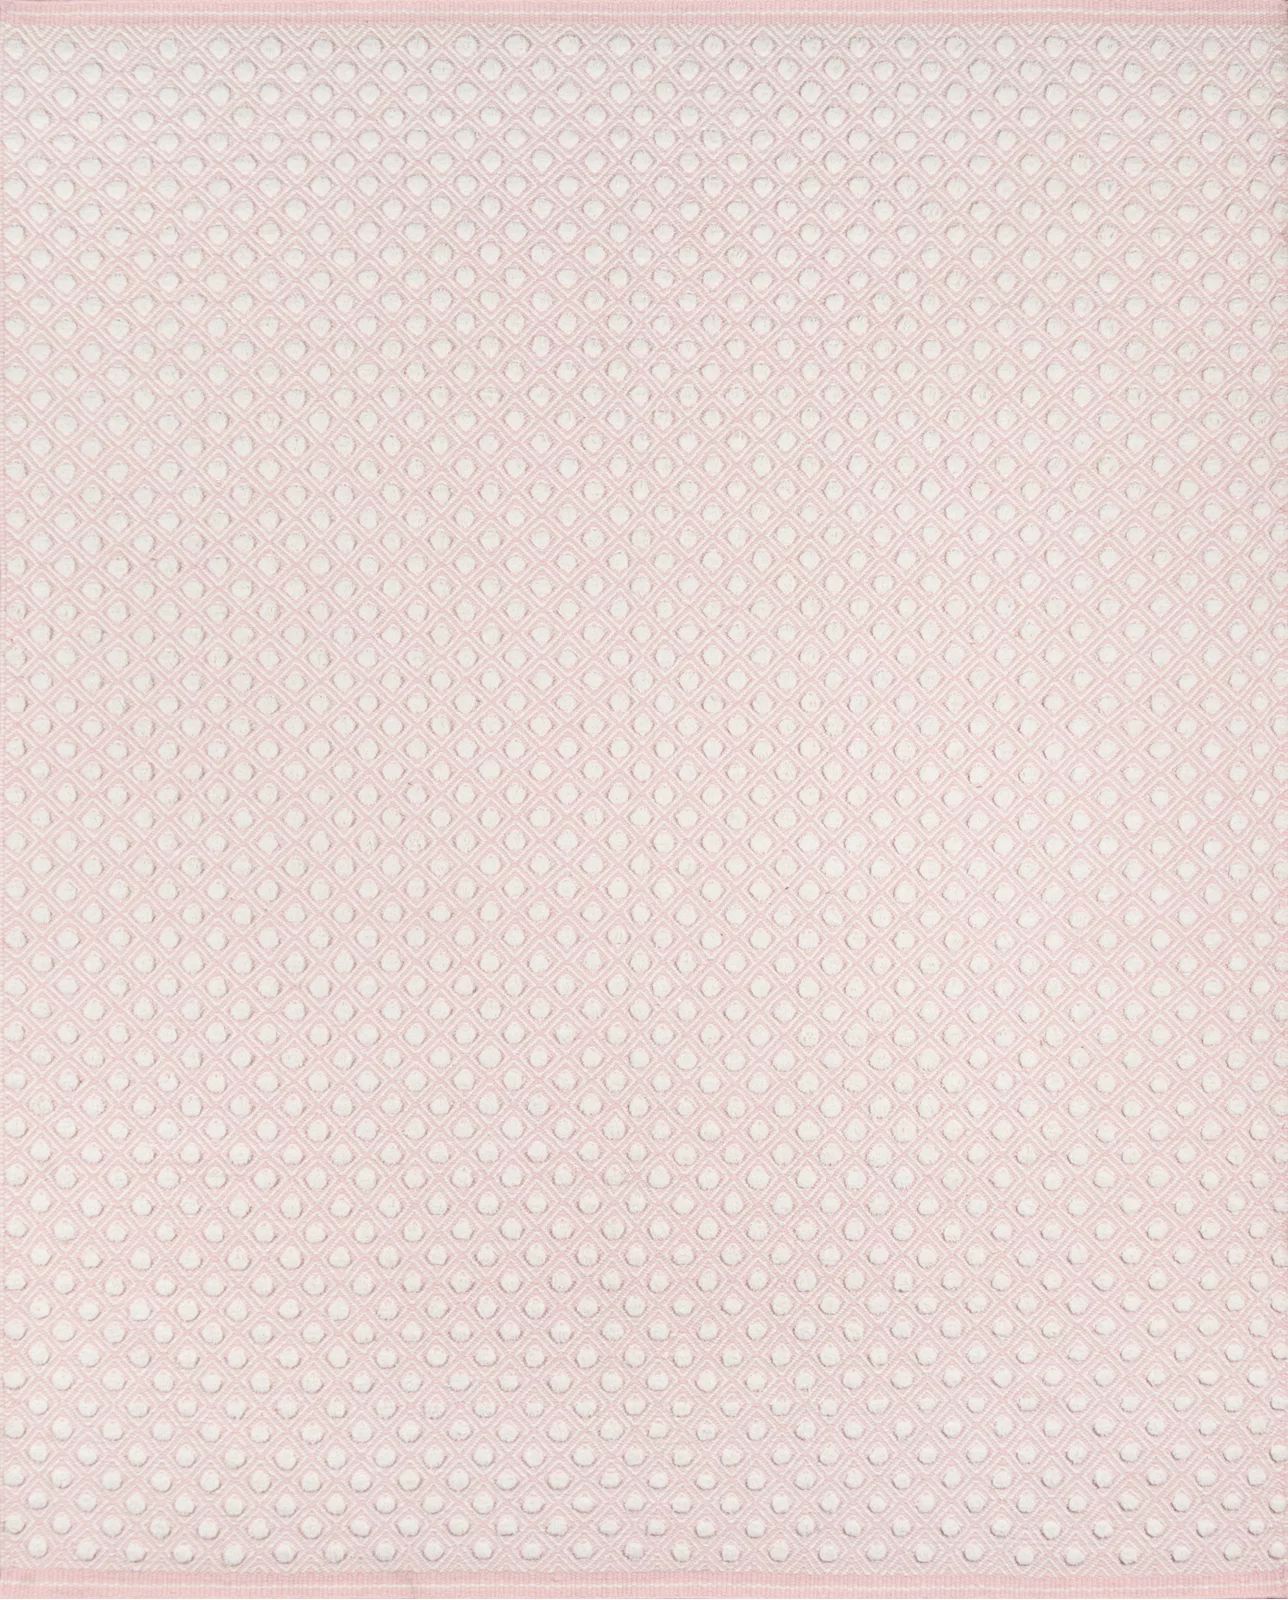 Langdon Polka Dots Handmade Flatweave Wool Area Rug in Pink | Wayfair North America